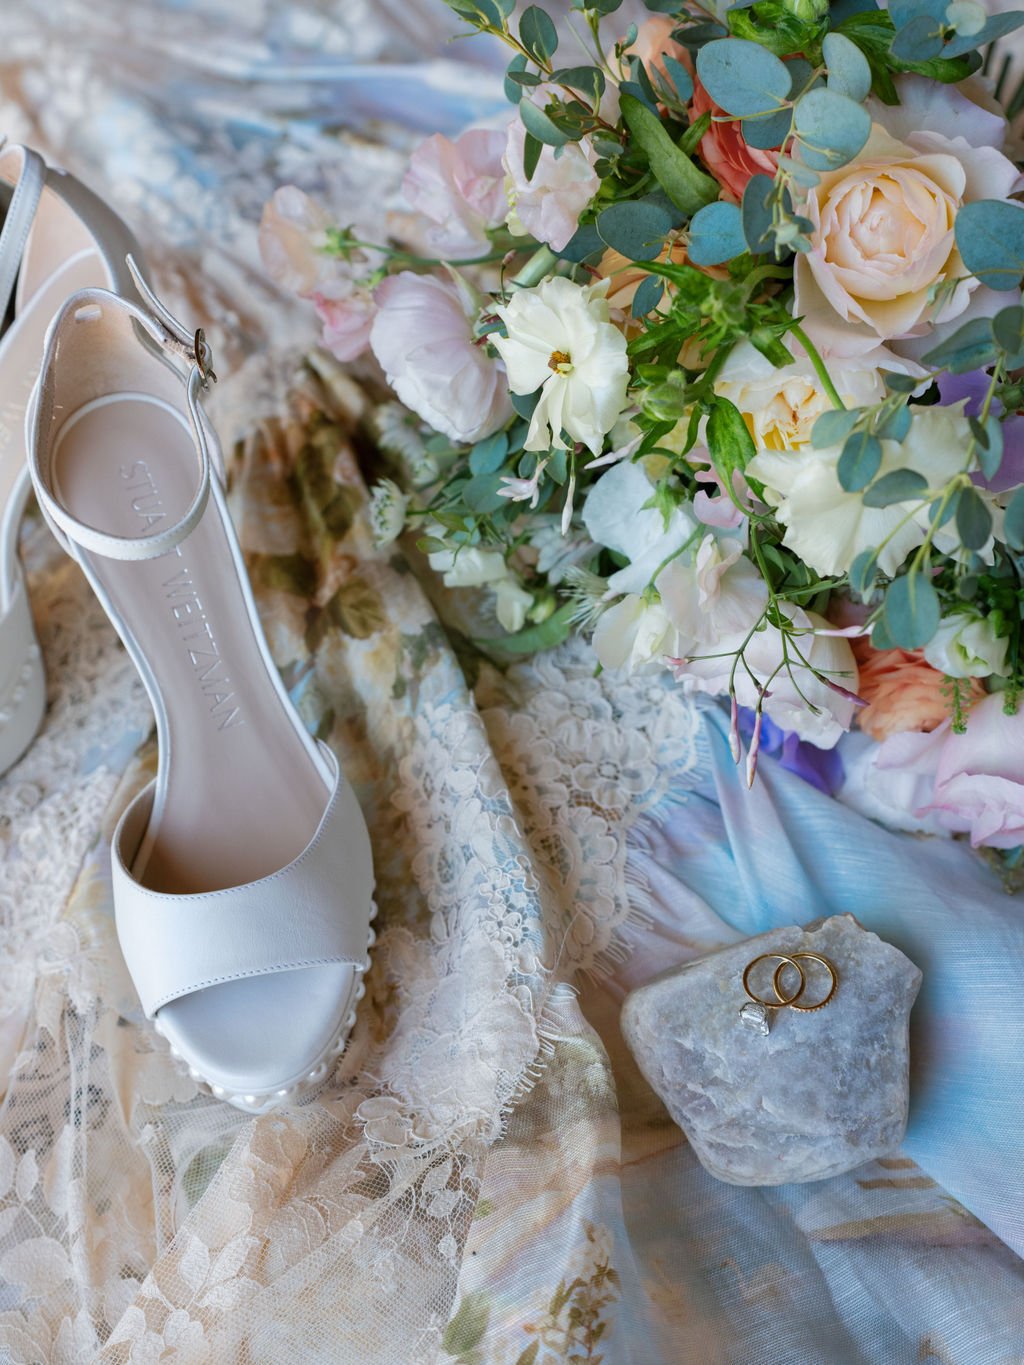 Luxe-Western-wedding-details-florals.jpg